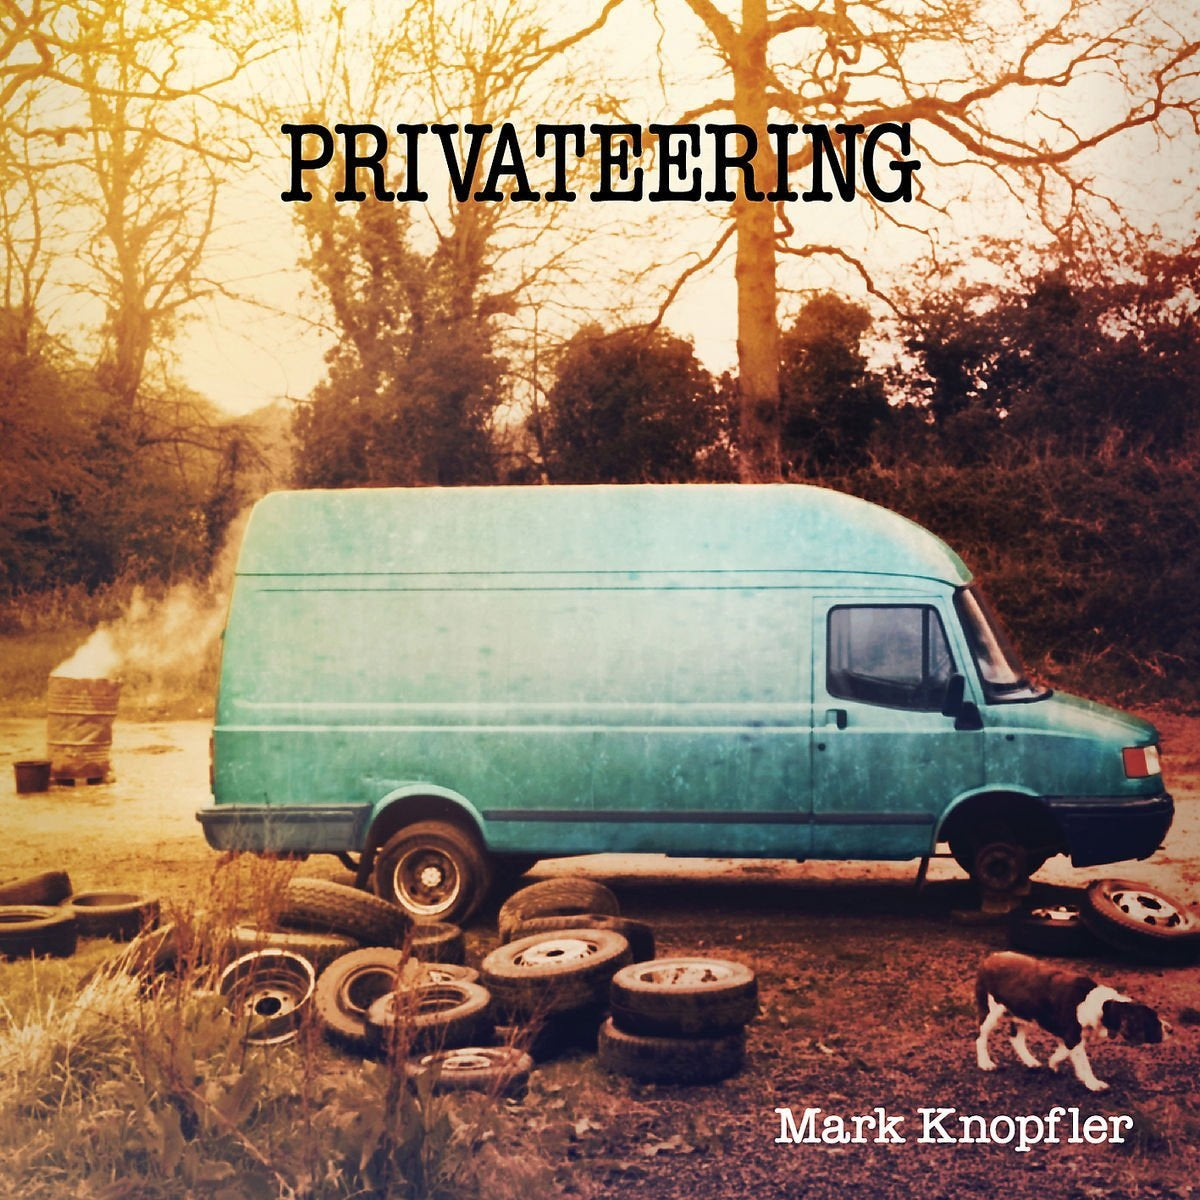 Mark Knopfler - Privateering: Vinyl 2LP